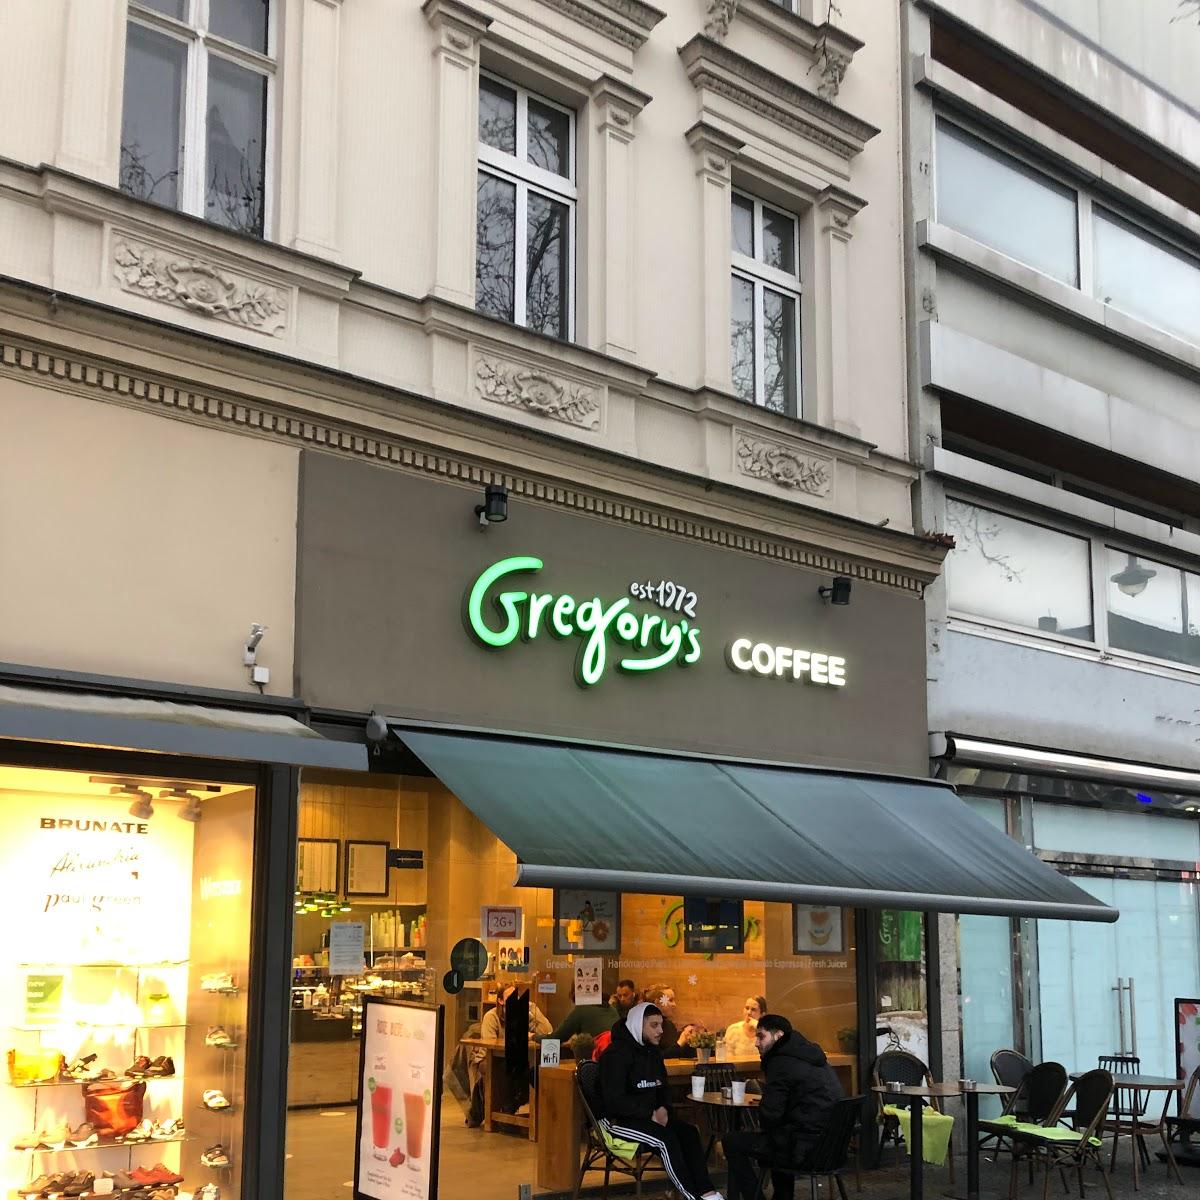 Restaurant "Gregory